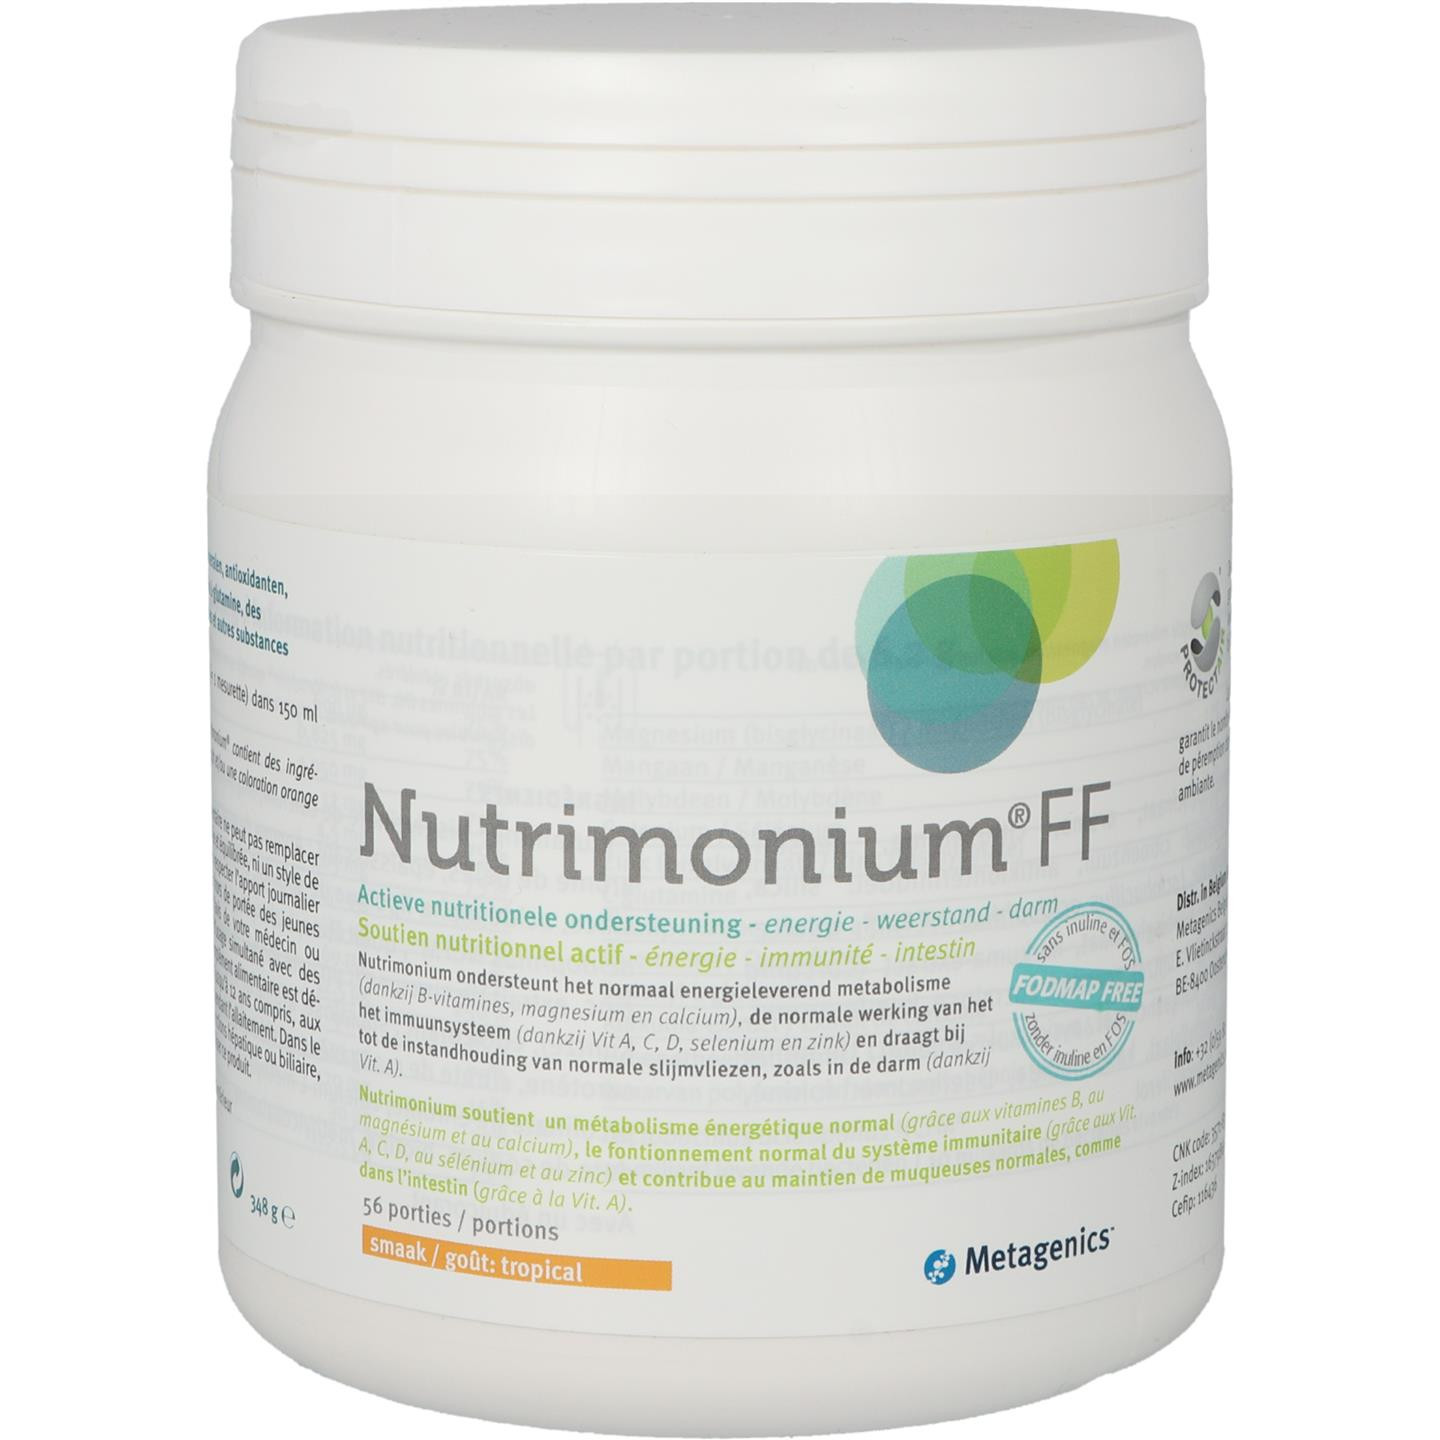 Nutrimonium FF